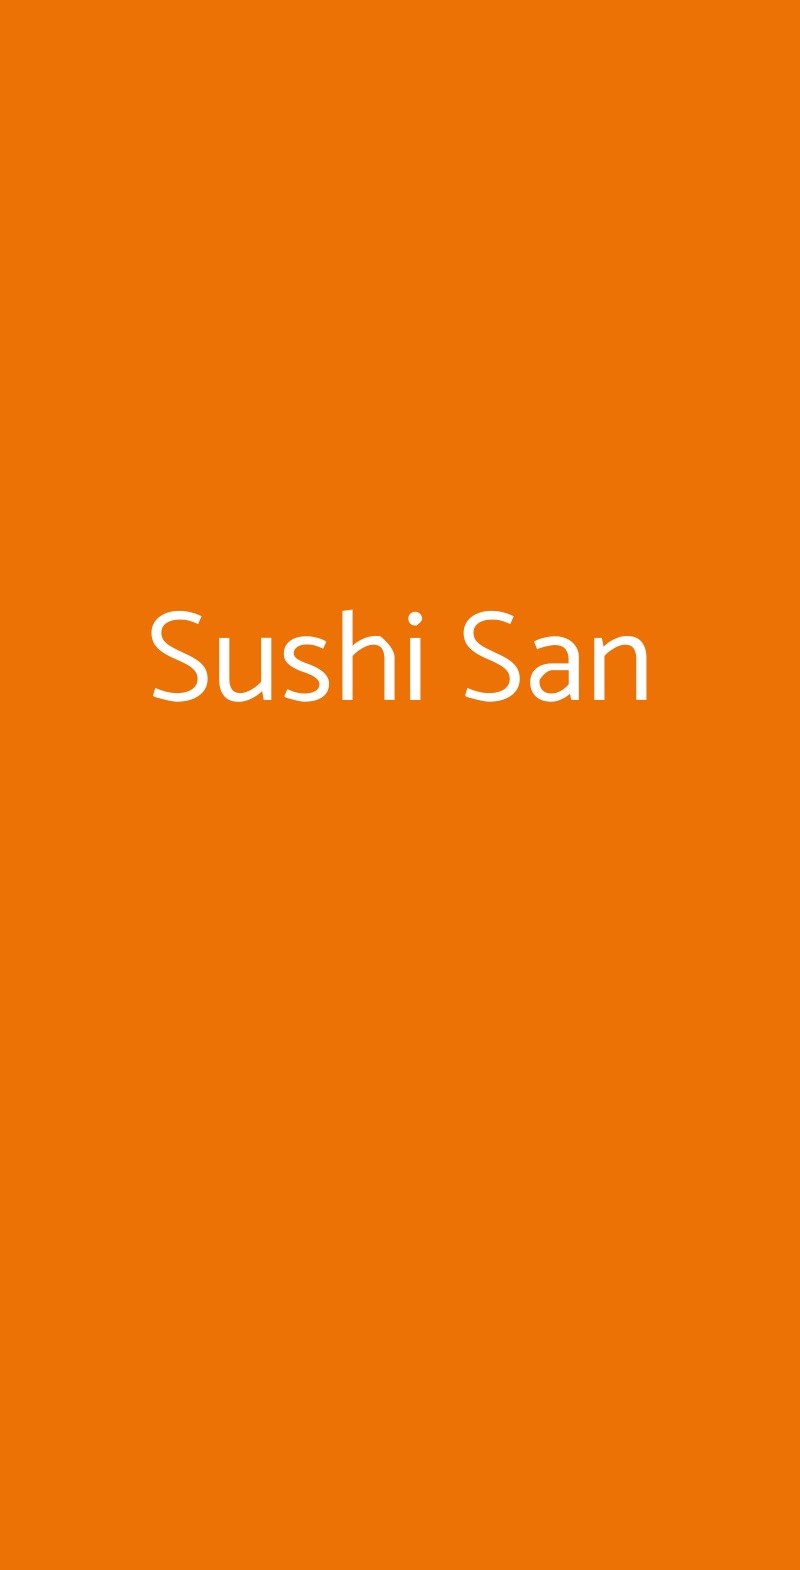 Sushi San Milano menù 1 pagina